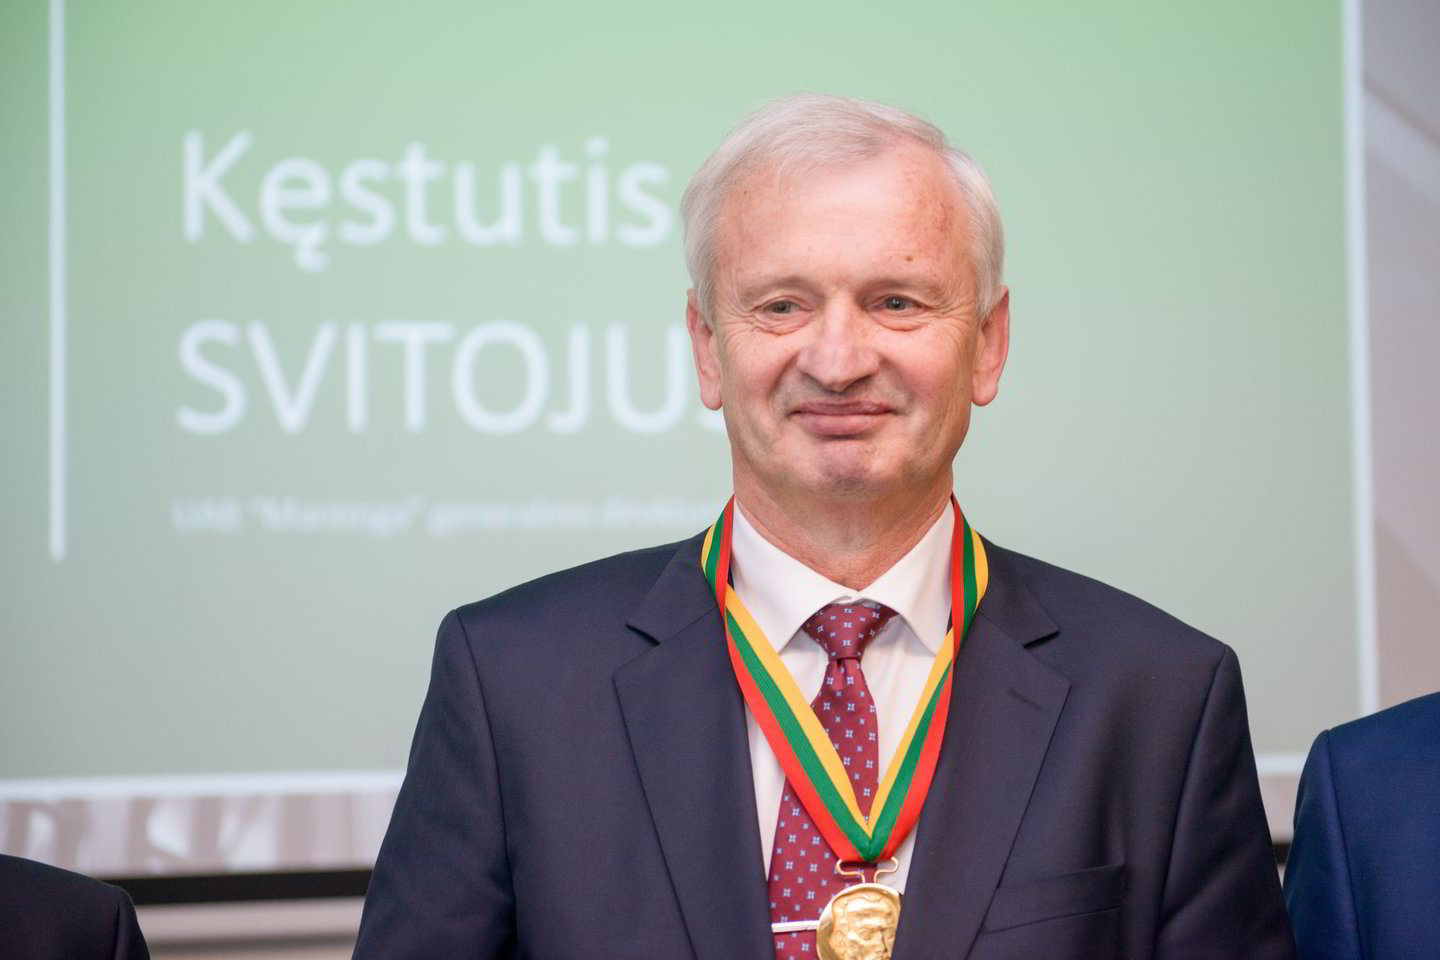 Renginyje buvo apdovanotos prograsyviausios įmonės už indėlį į mokslą ir technologijas bei eksportą.<br>J.Stacevičiaus nuotr.